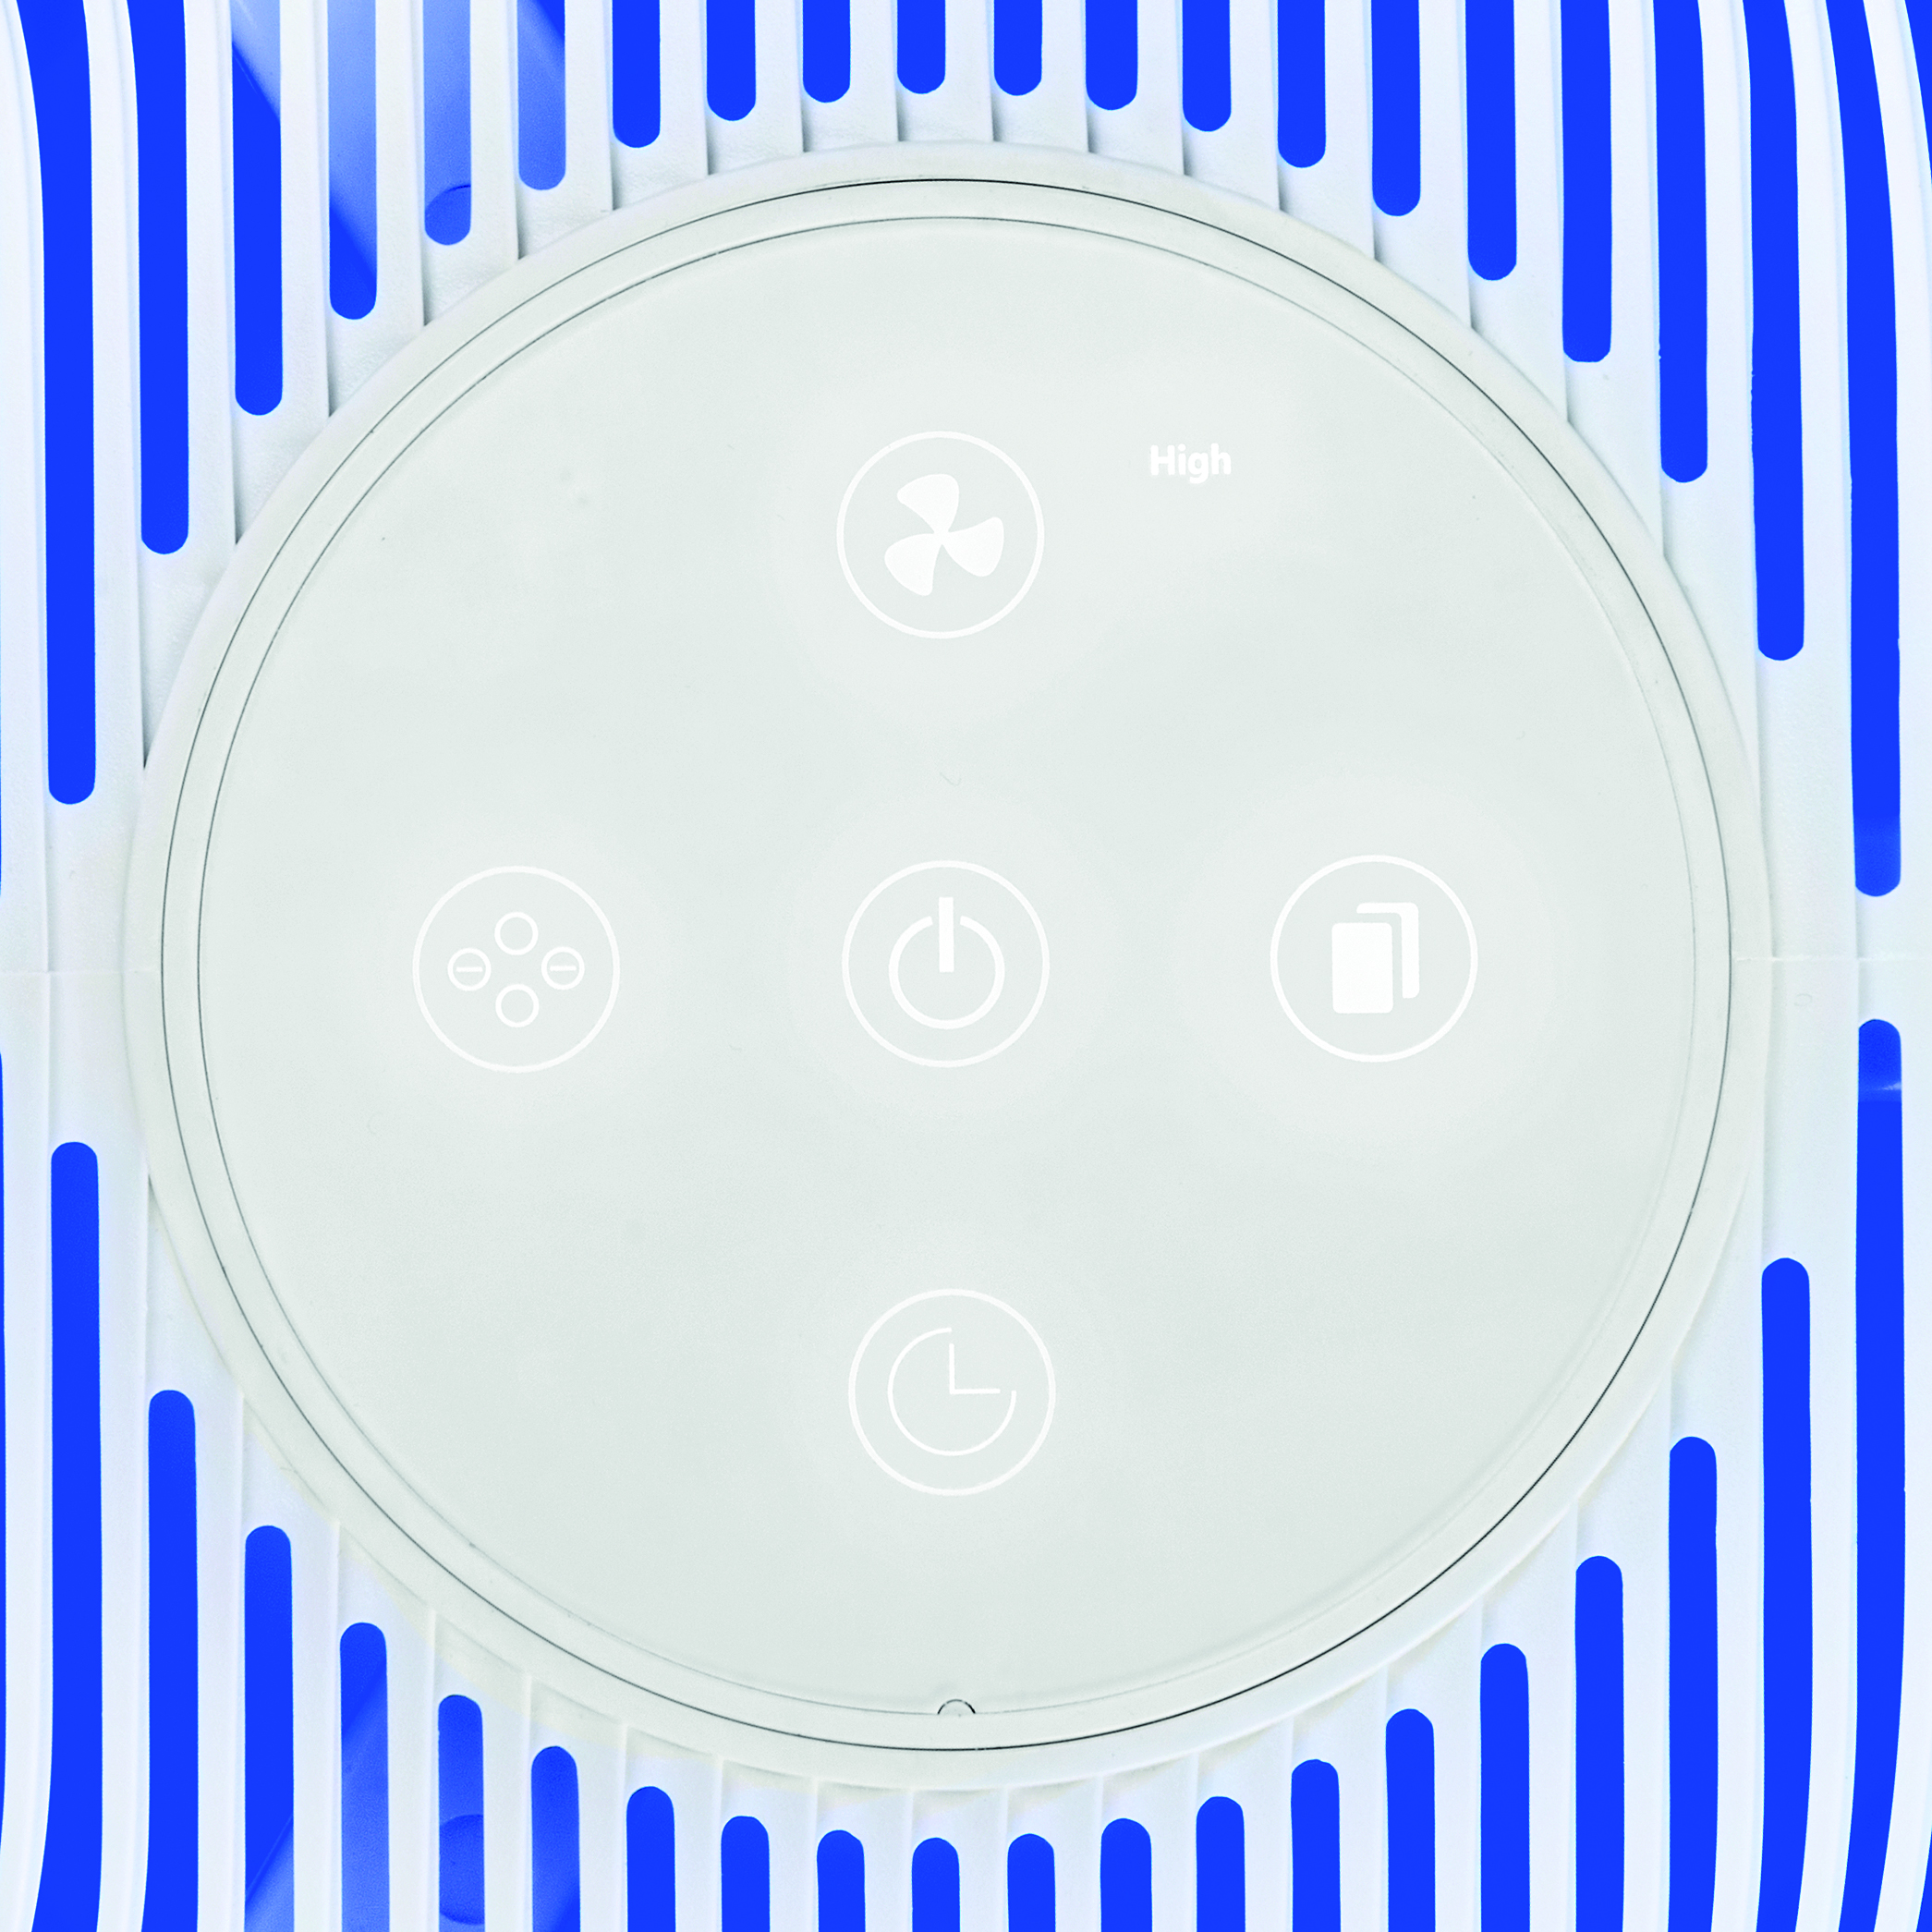 ECG AP1 Compact Pearl | | Timer Weiss Nachtmodus| | 9 Luftreiniger Wi-Fi HEPA m² und (30 bis 14 | Watt) | Luftreiniger